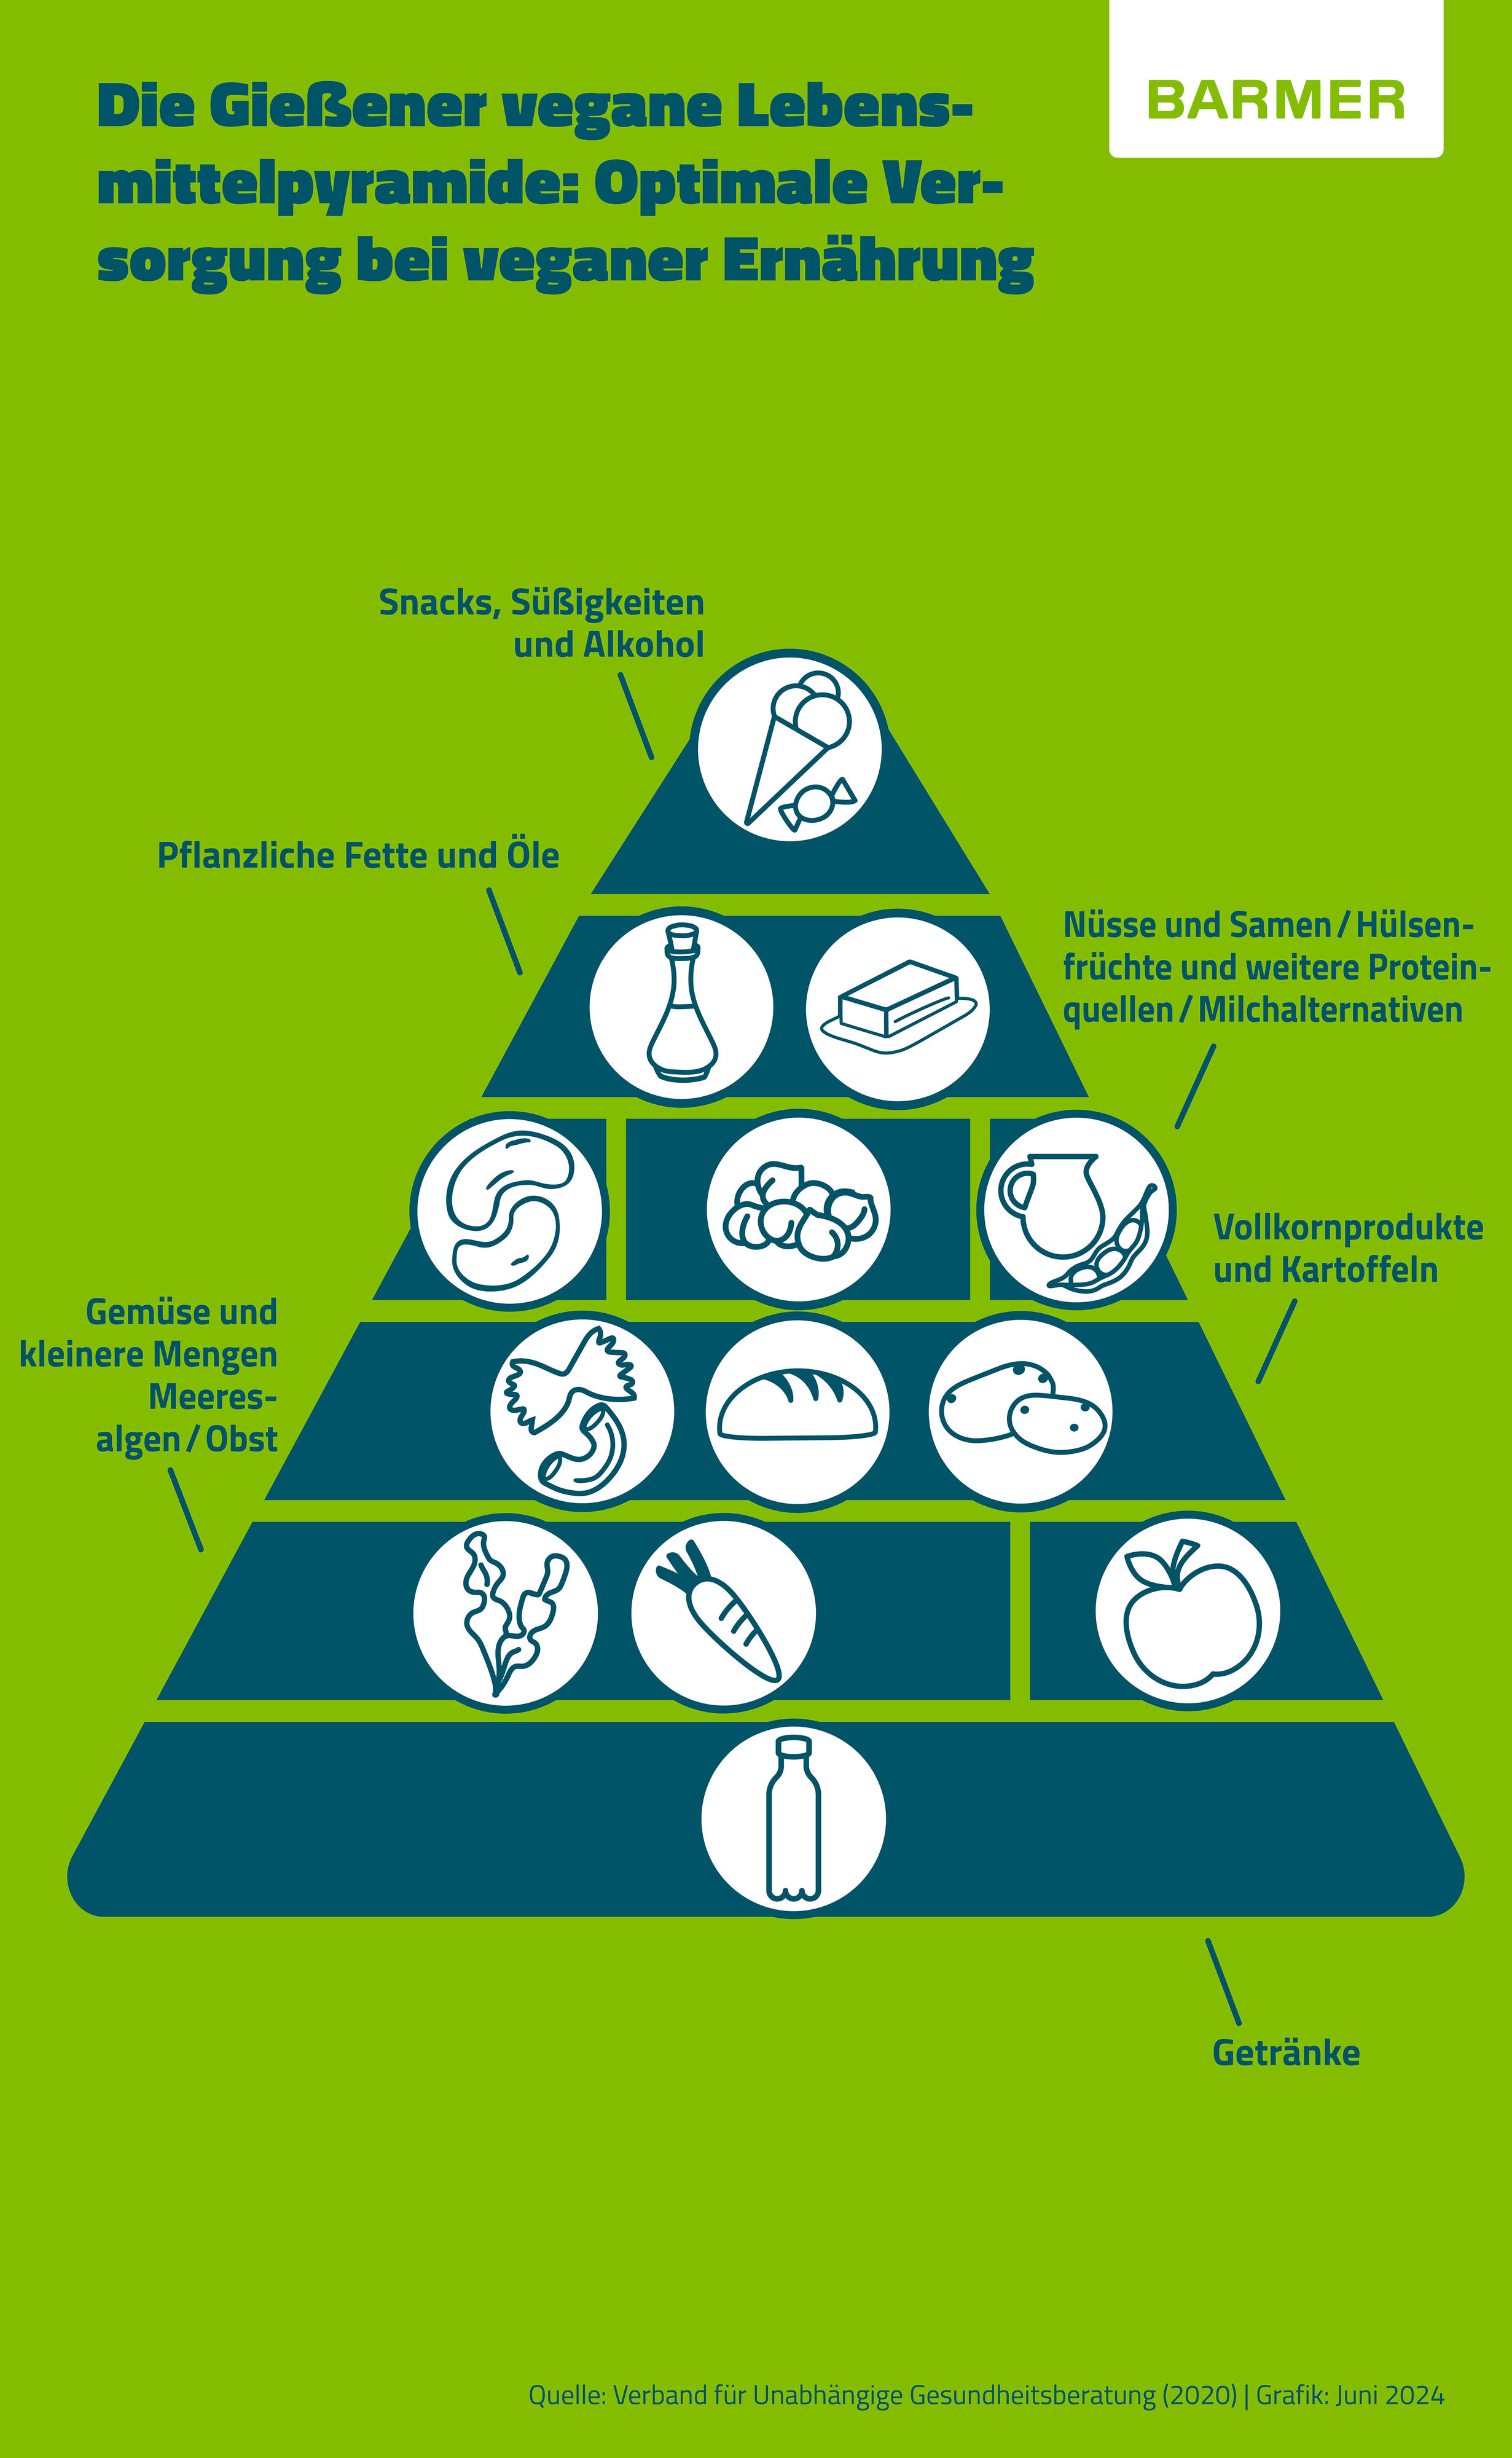 Gießener vegane Lebensmittelpyramide